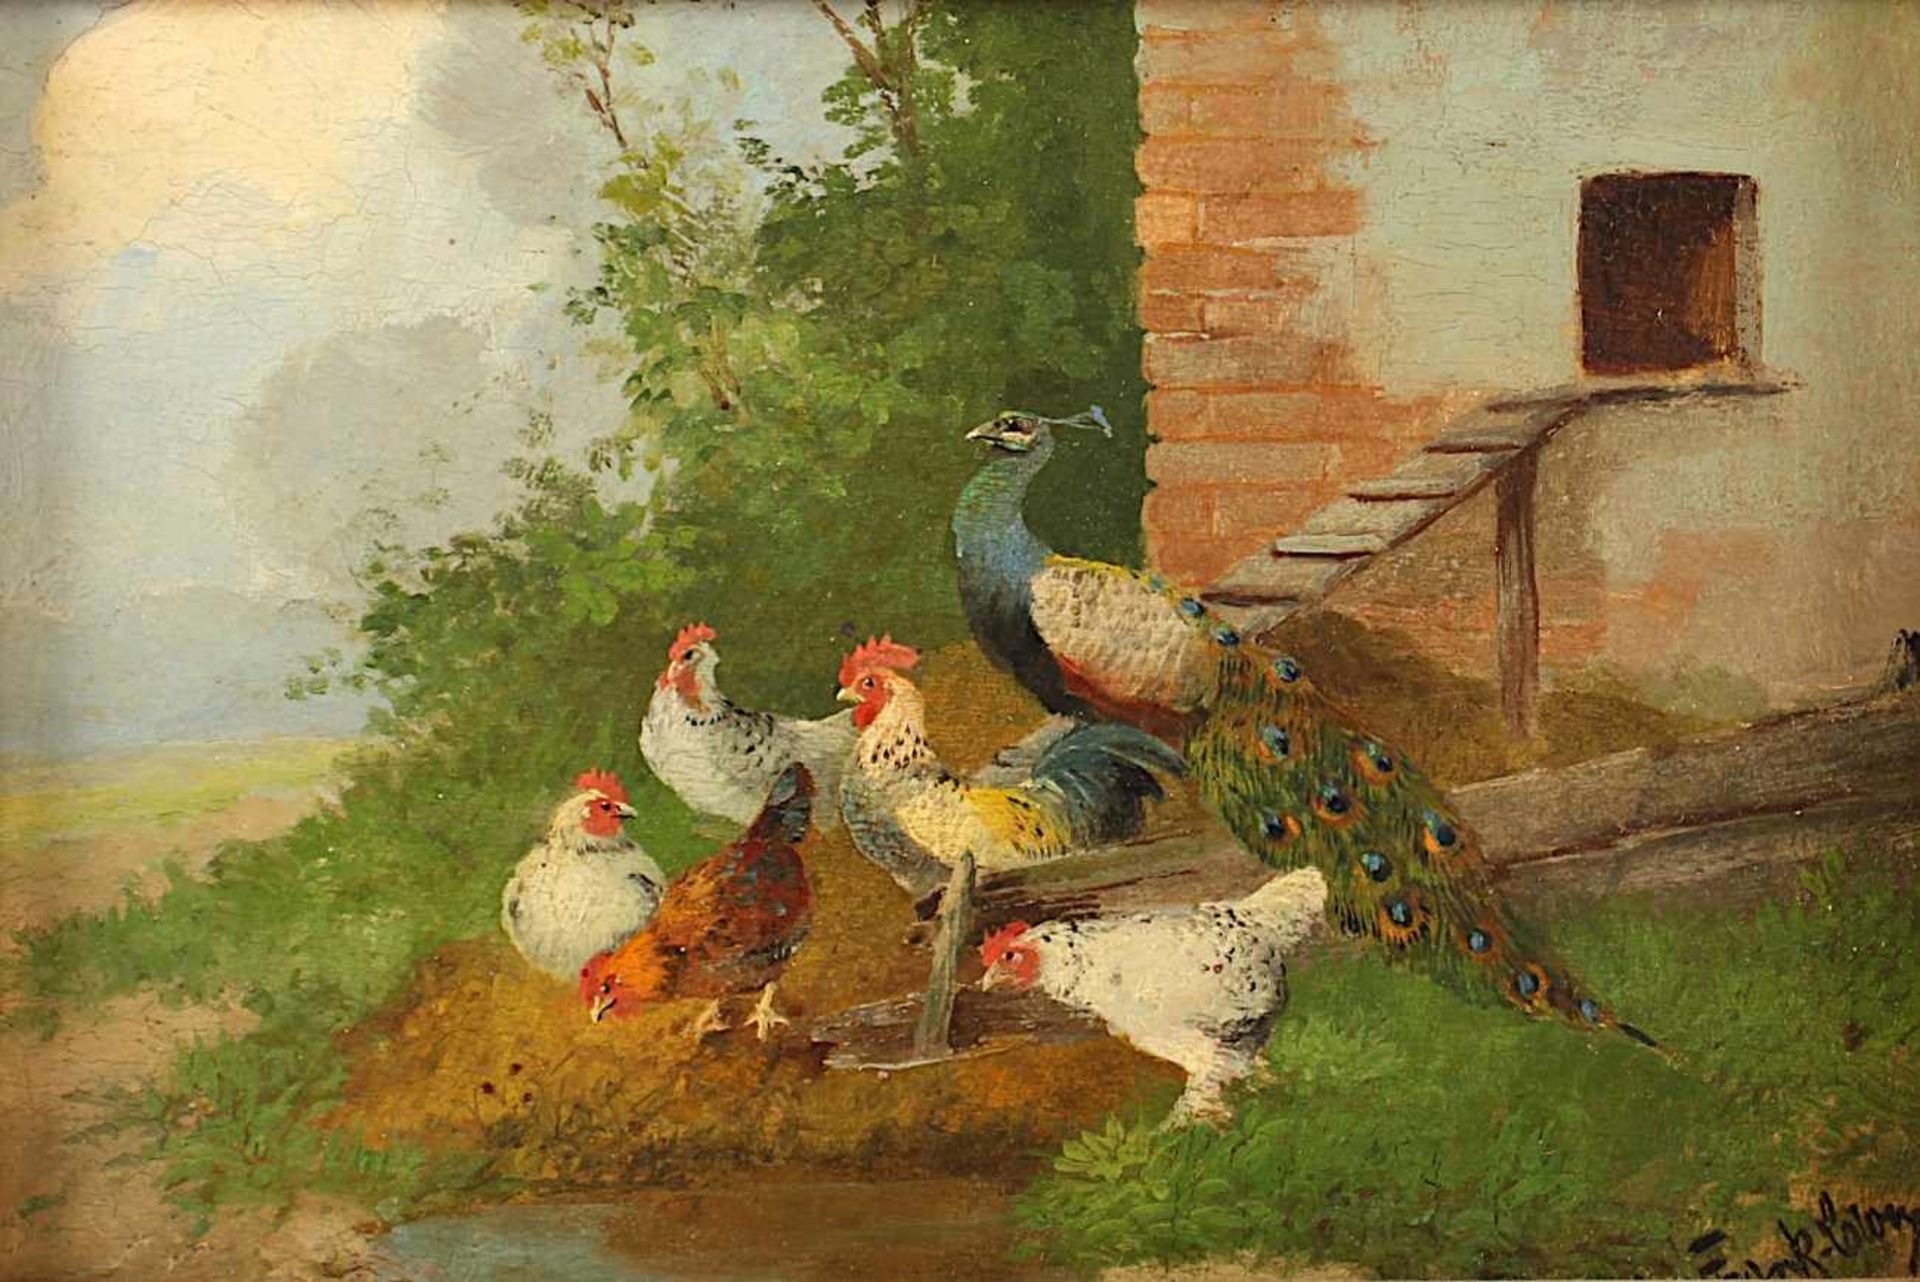 FRANK-COLON, Eugen (Maler um 1900), "Federvieh", Öl/Holz, 12 x 16, unten rechts signiert, R.